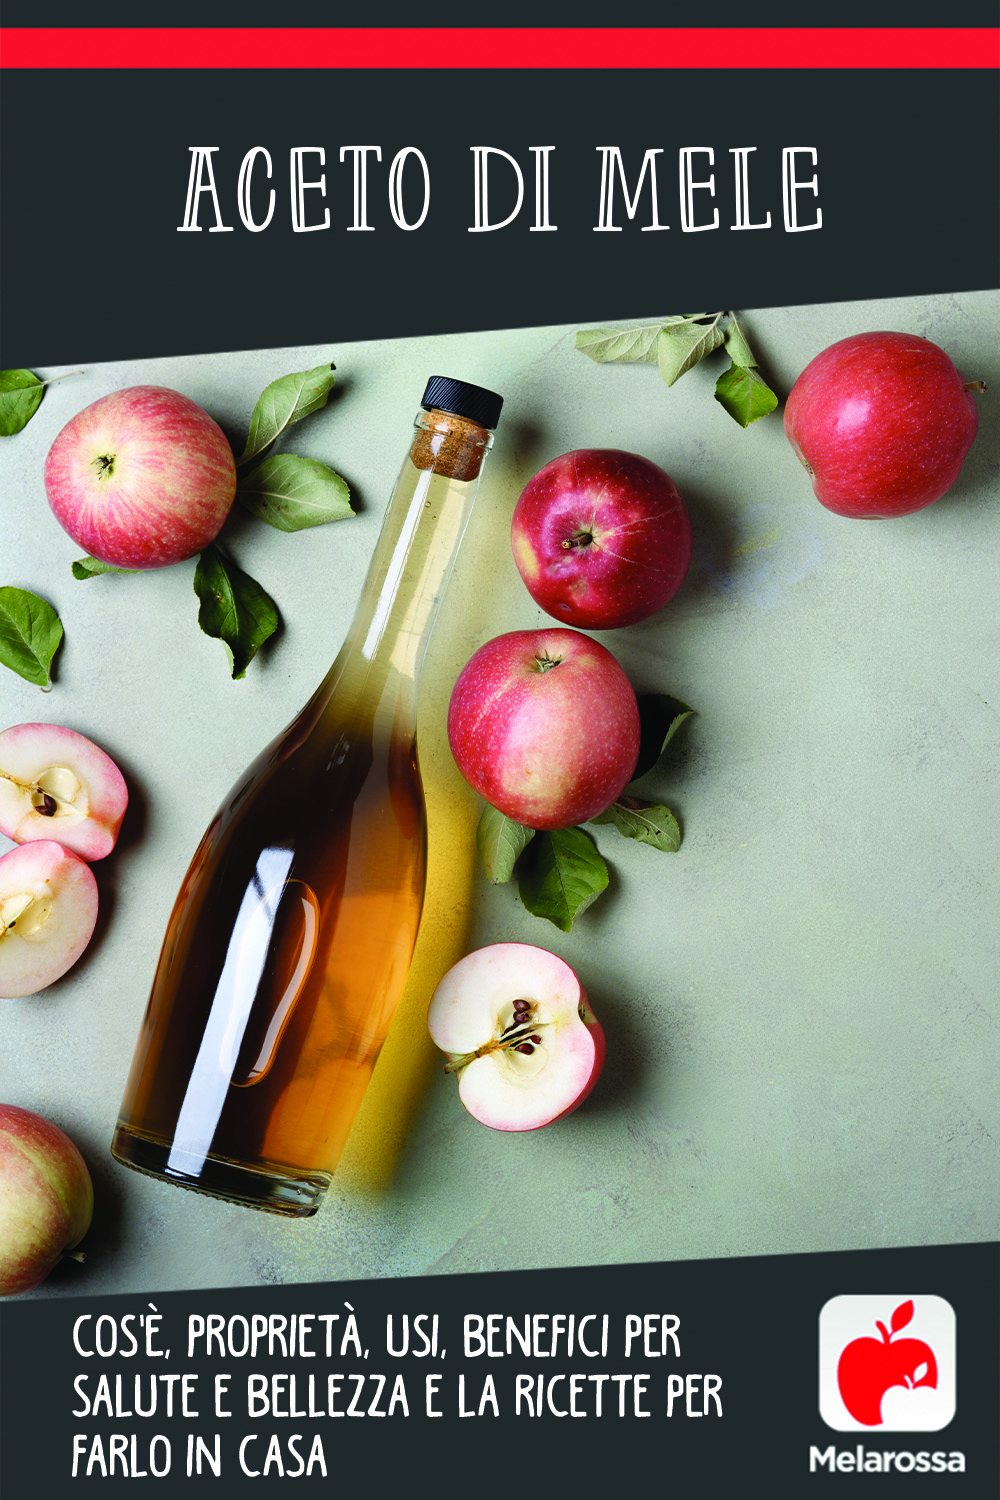 aceto di mele: cos'è, usi, benefici e la ricetta per farlo in casa